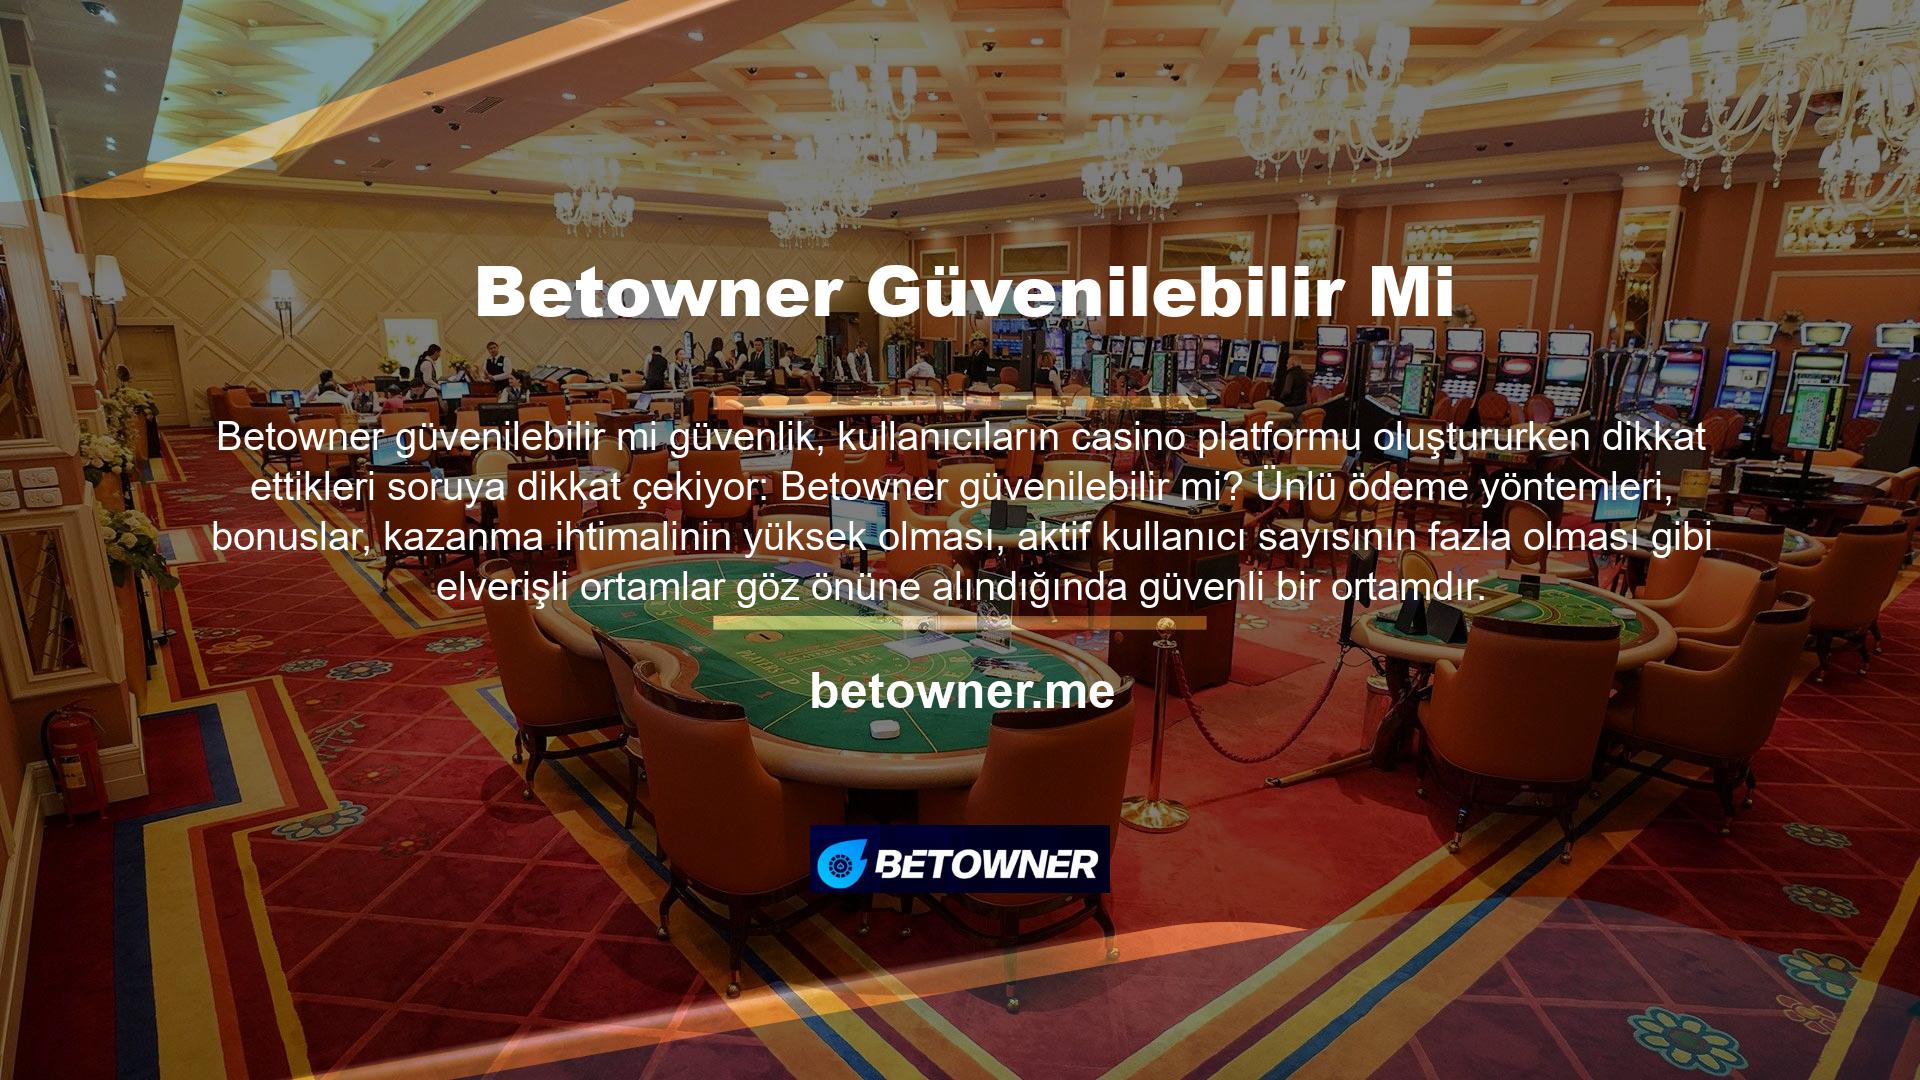 Betowner, sunulan tüm casino ve bahis türleri için geçerli alternatiflerle bonuslar sunmaktadır